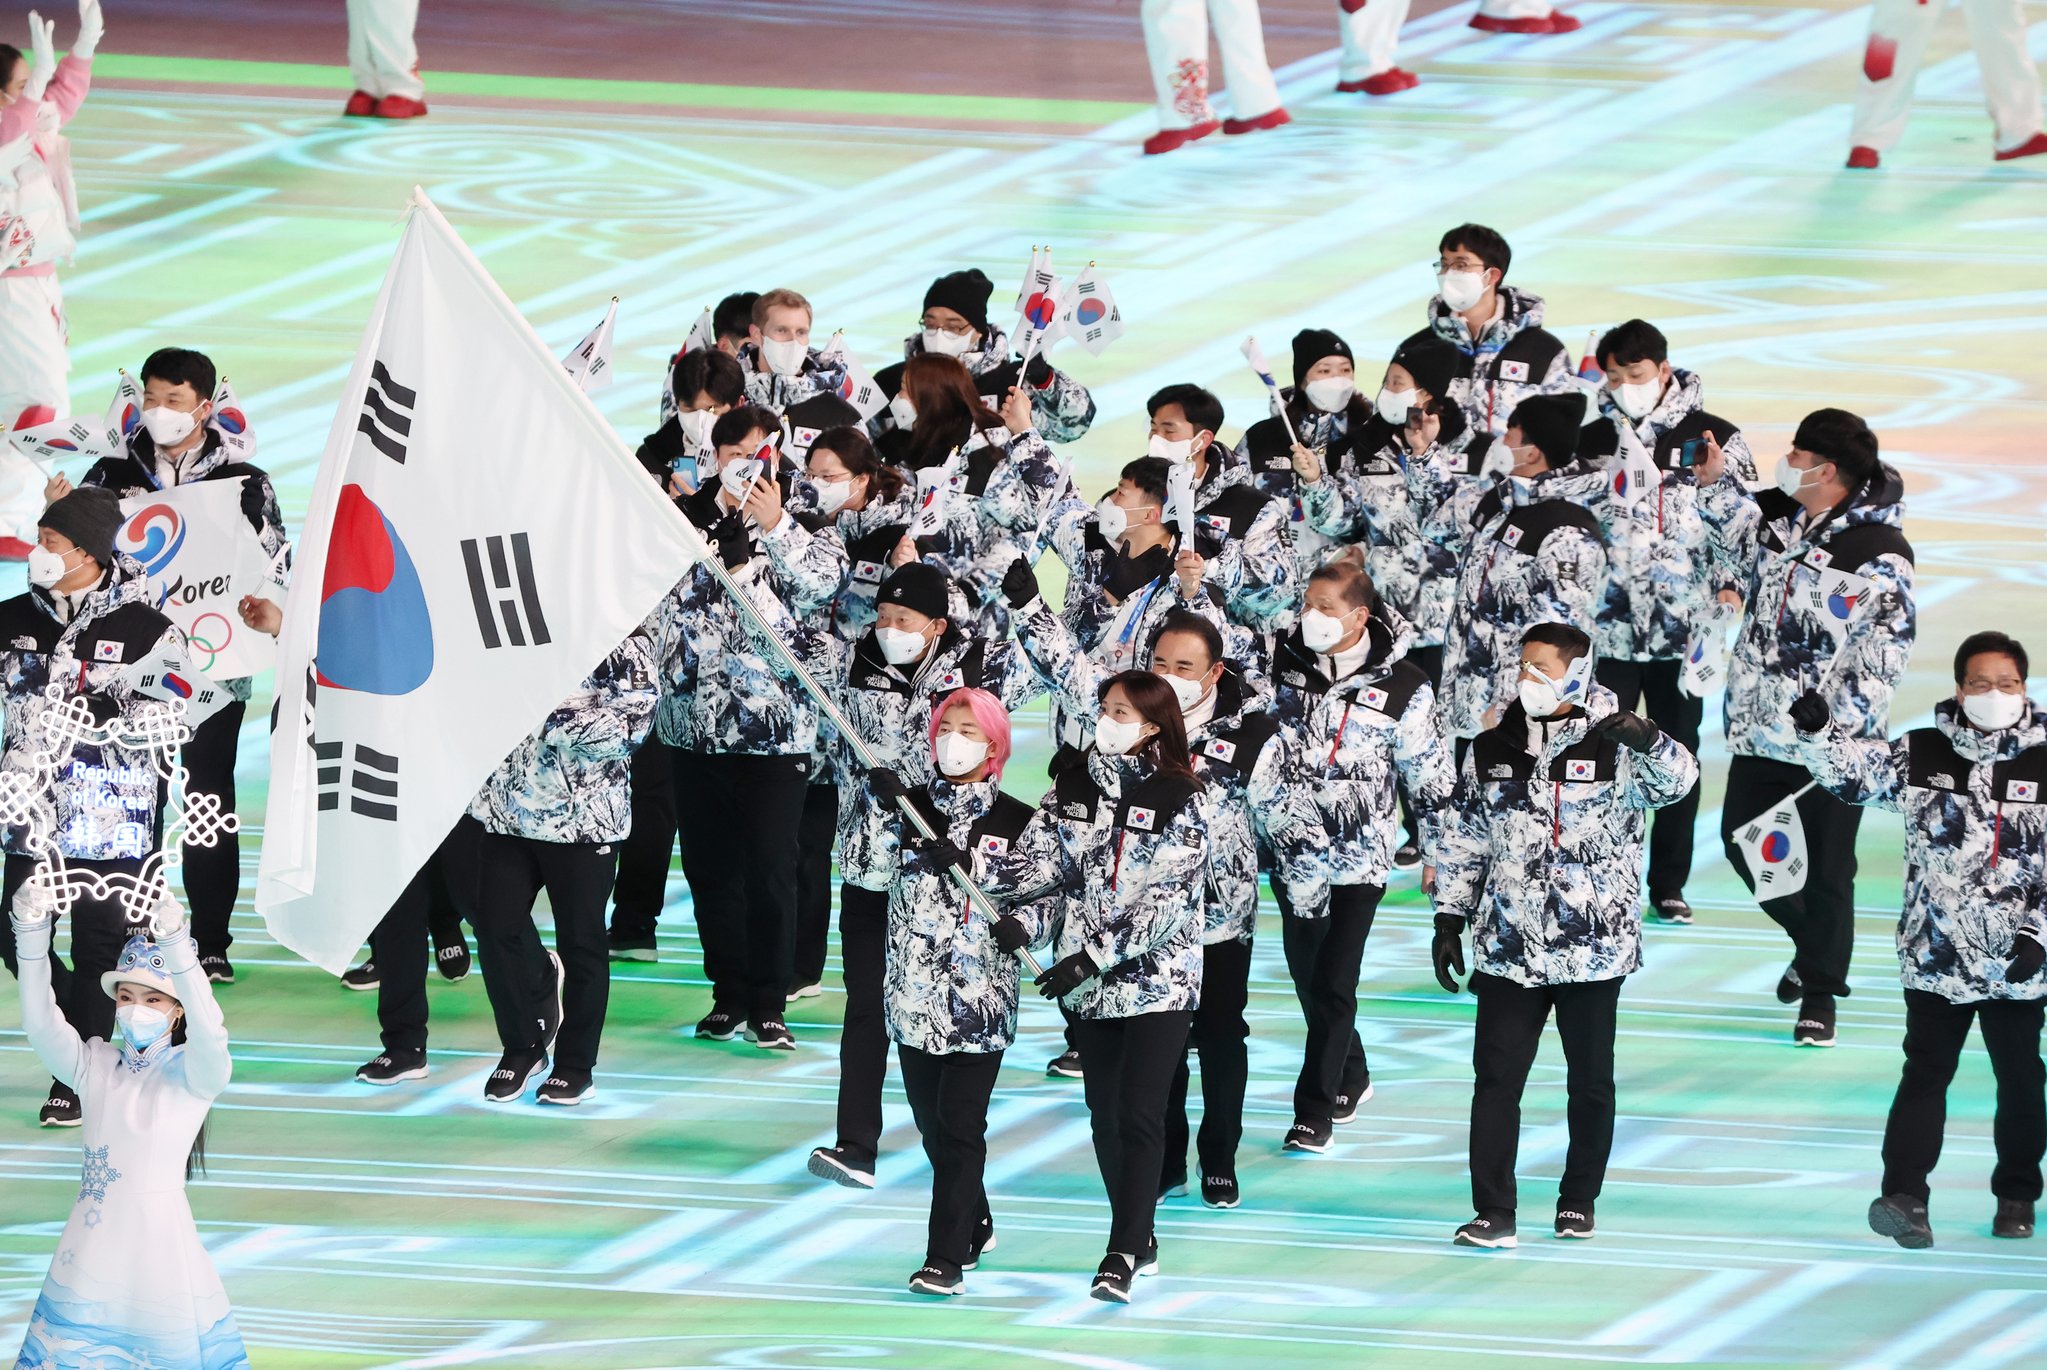 곽윤기와 김아랑을 기수로 한 대한민국 선수단이 베이징올림픽 개회식 현장에 입장하고 있다. [연합뉴스] 